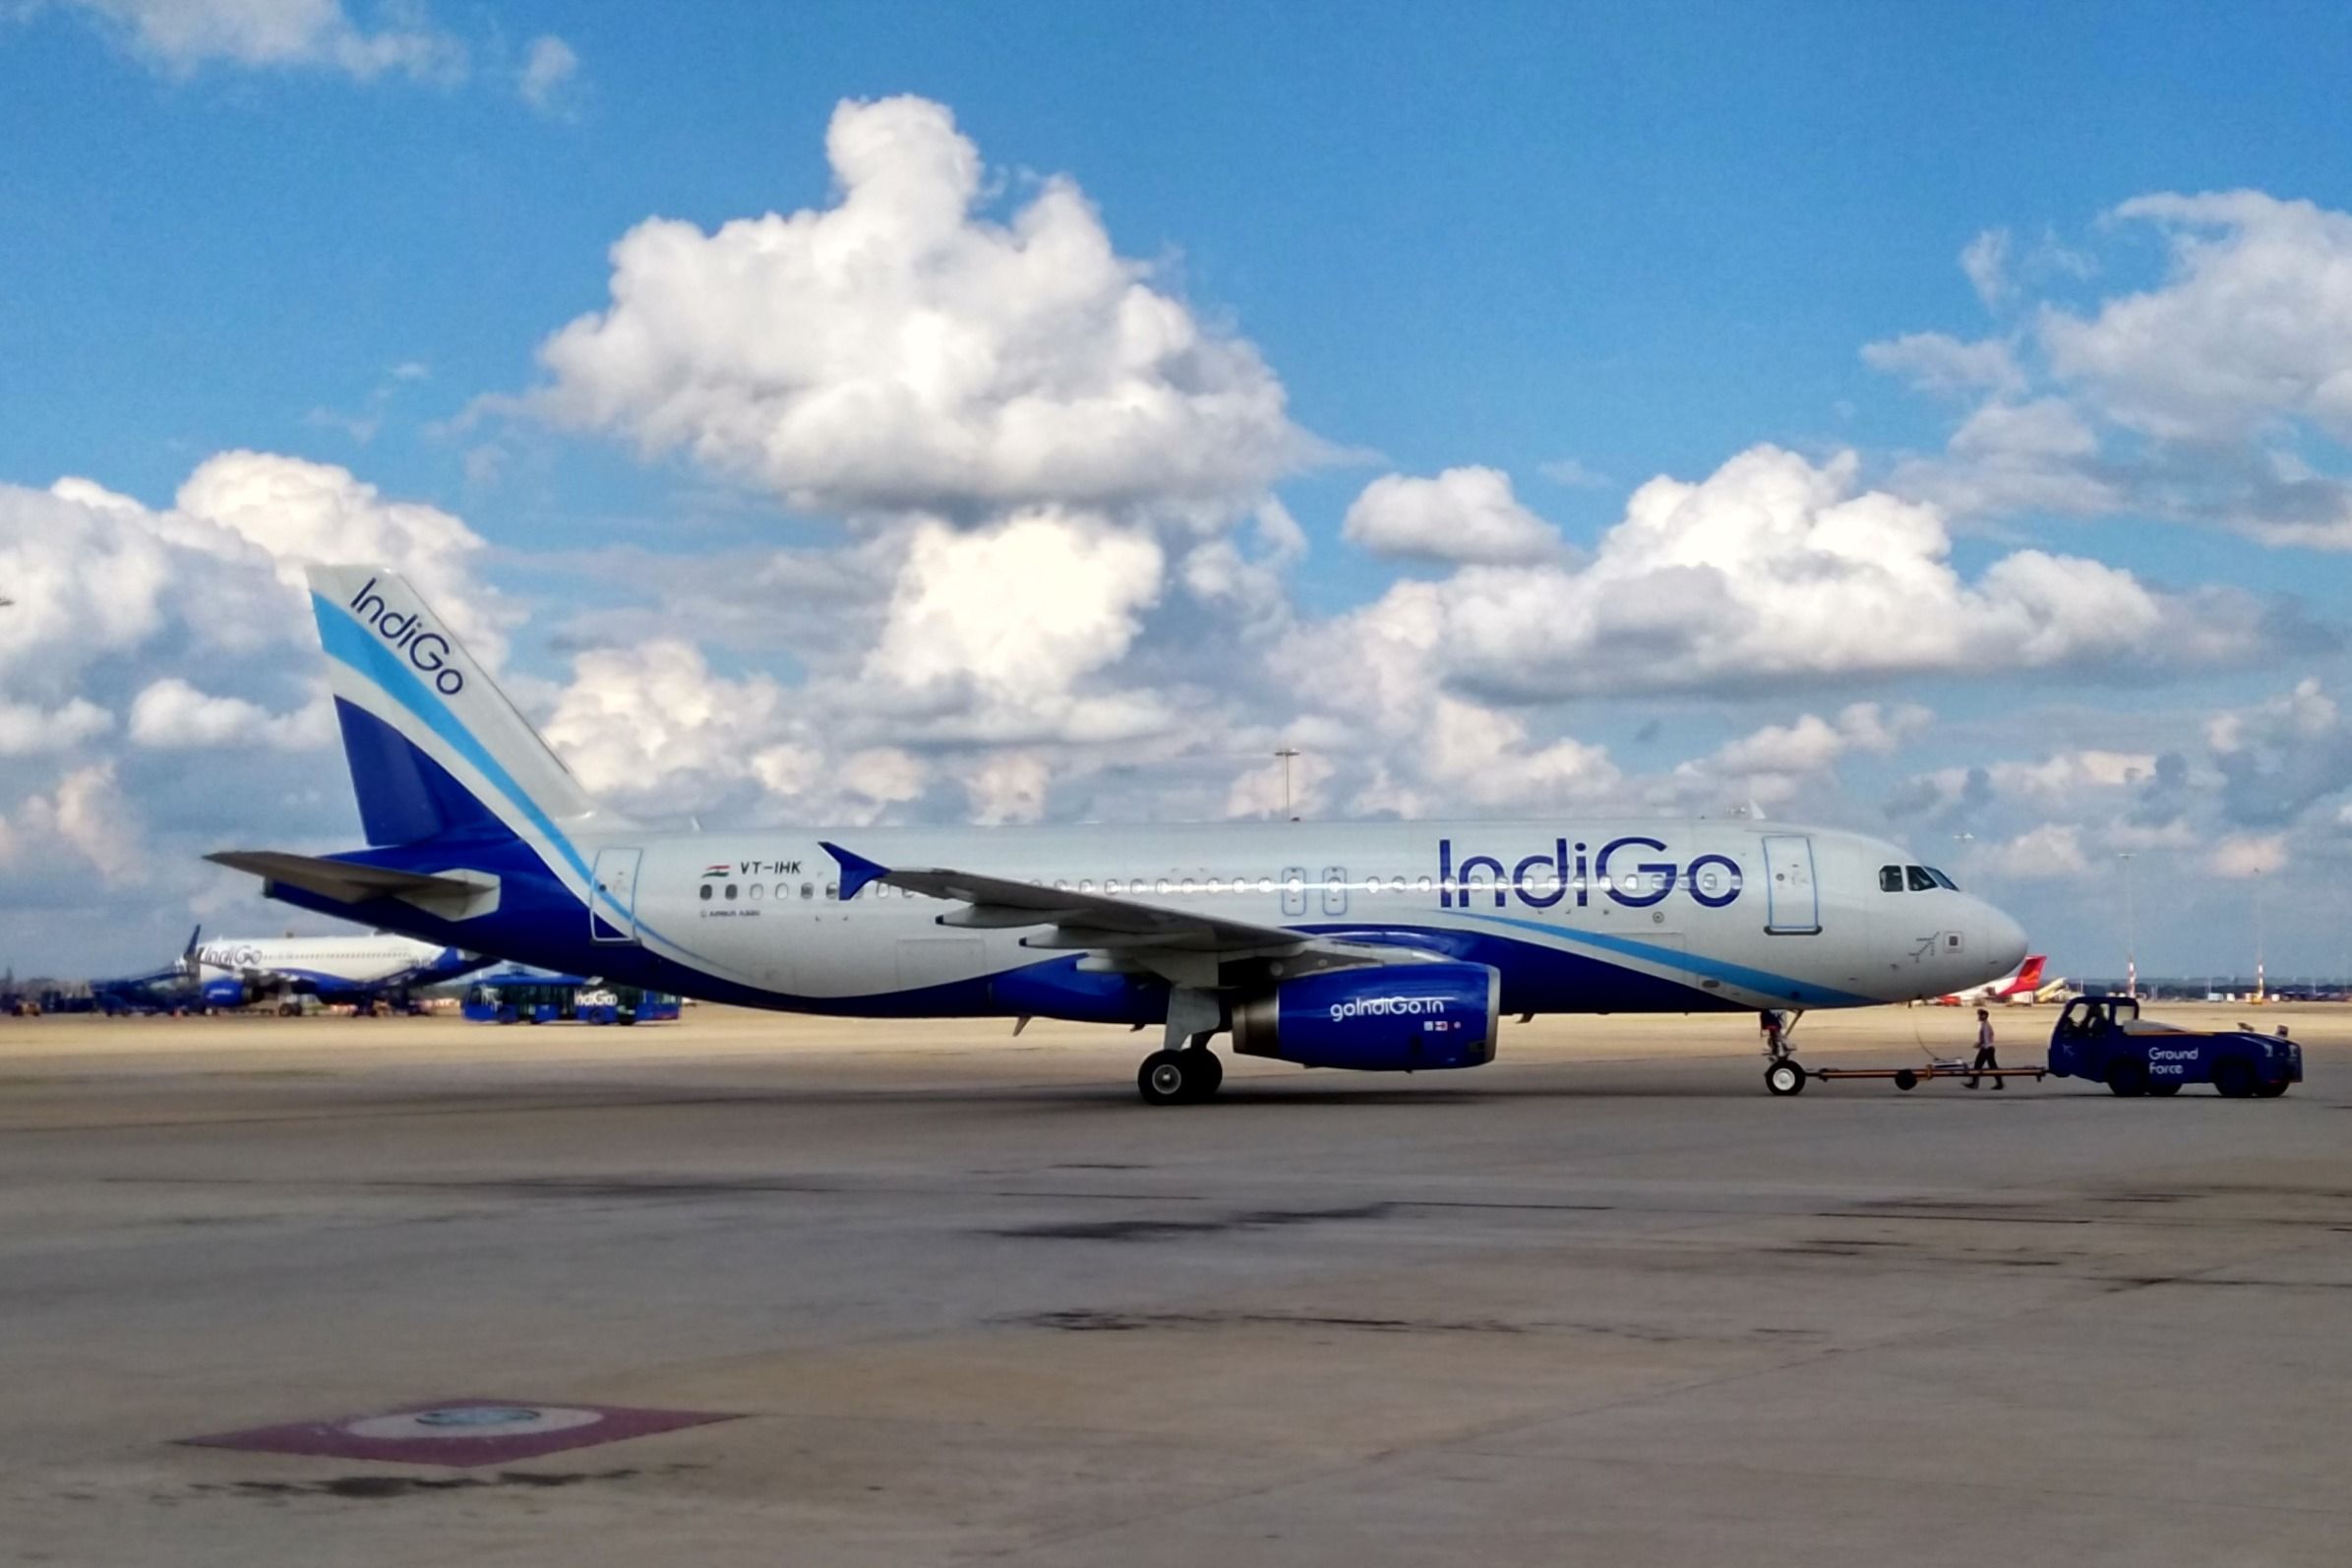 IndiGo Airbus aircraft parked at an airport